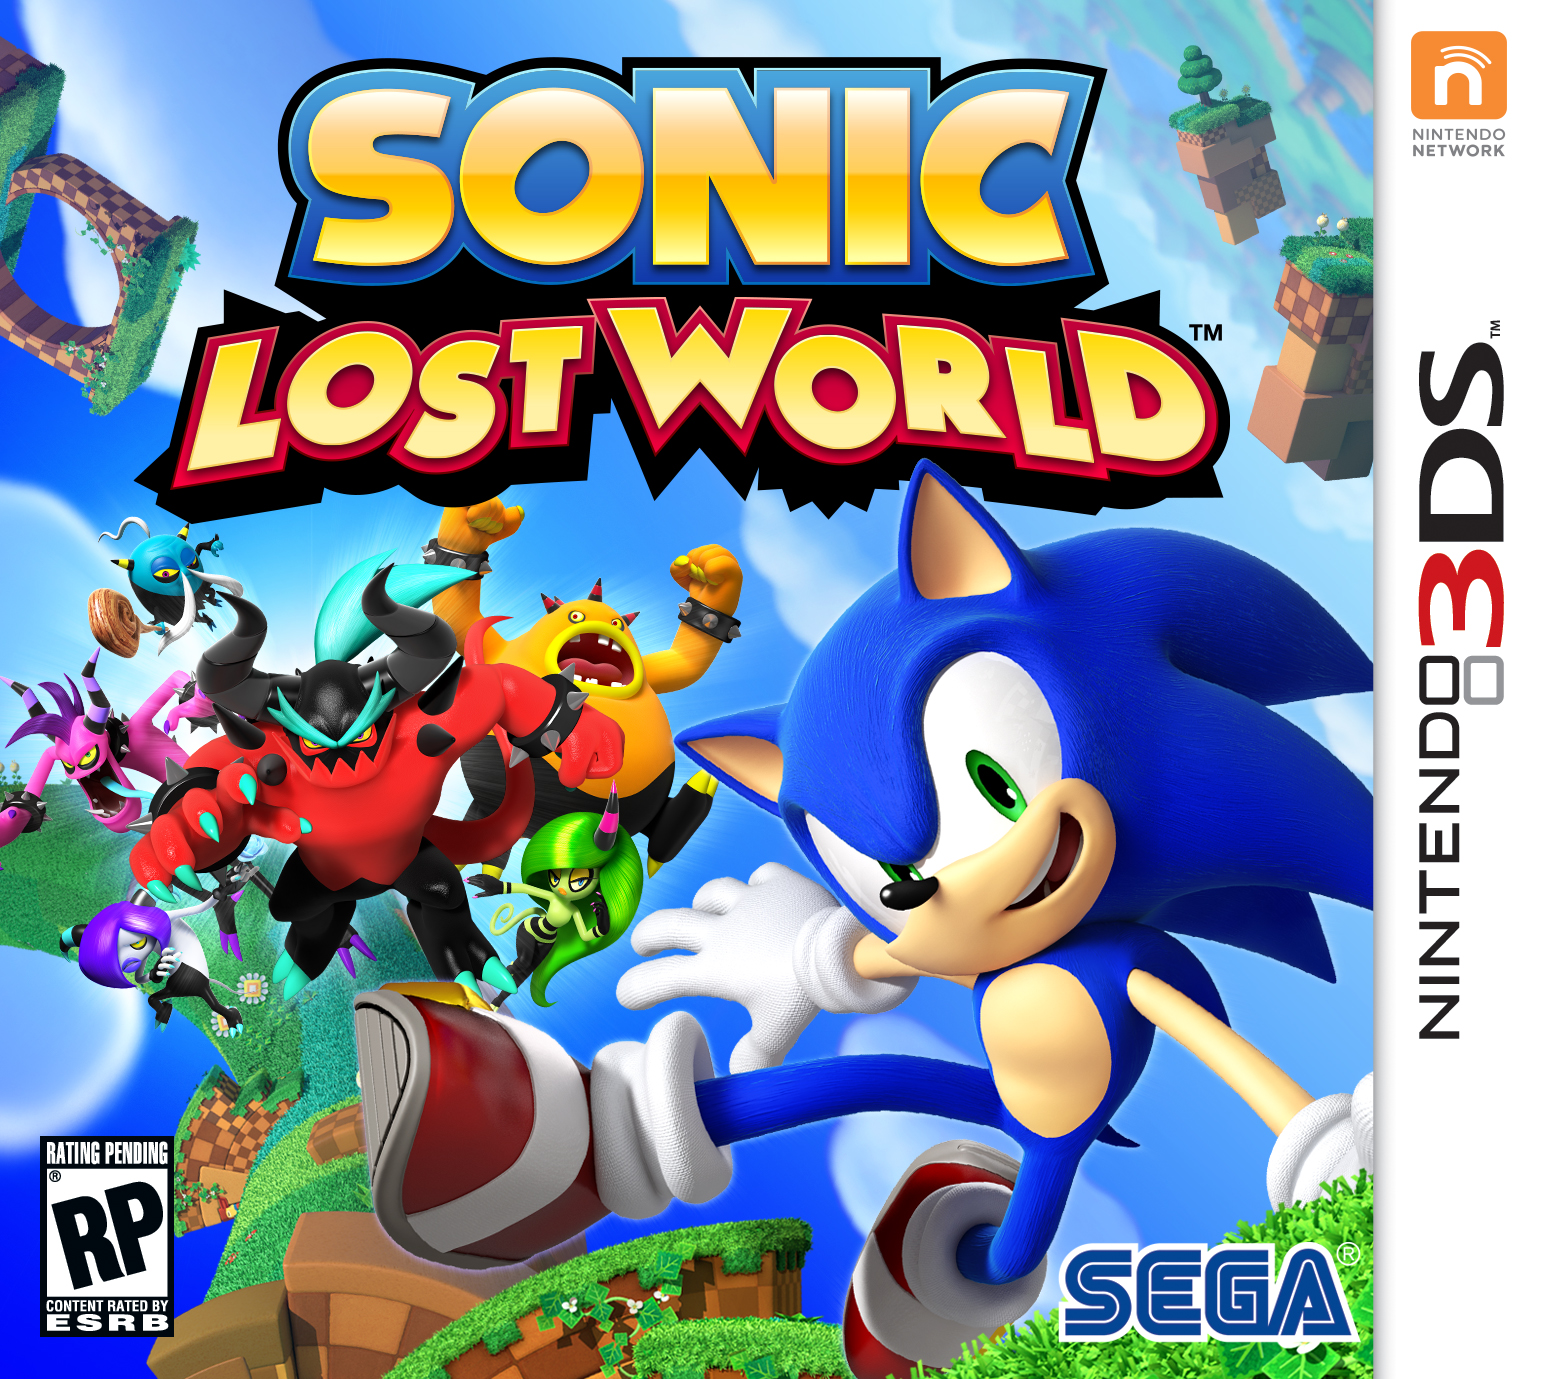  Sonic  Lost  World  3DS The Retro Review Sonic  Retro